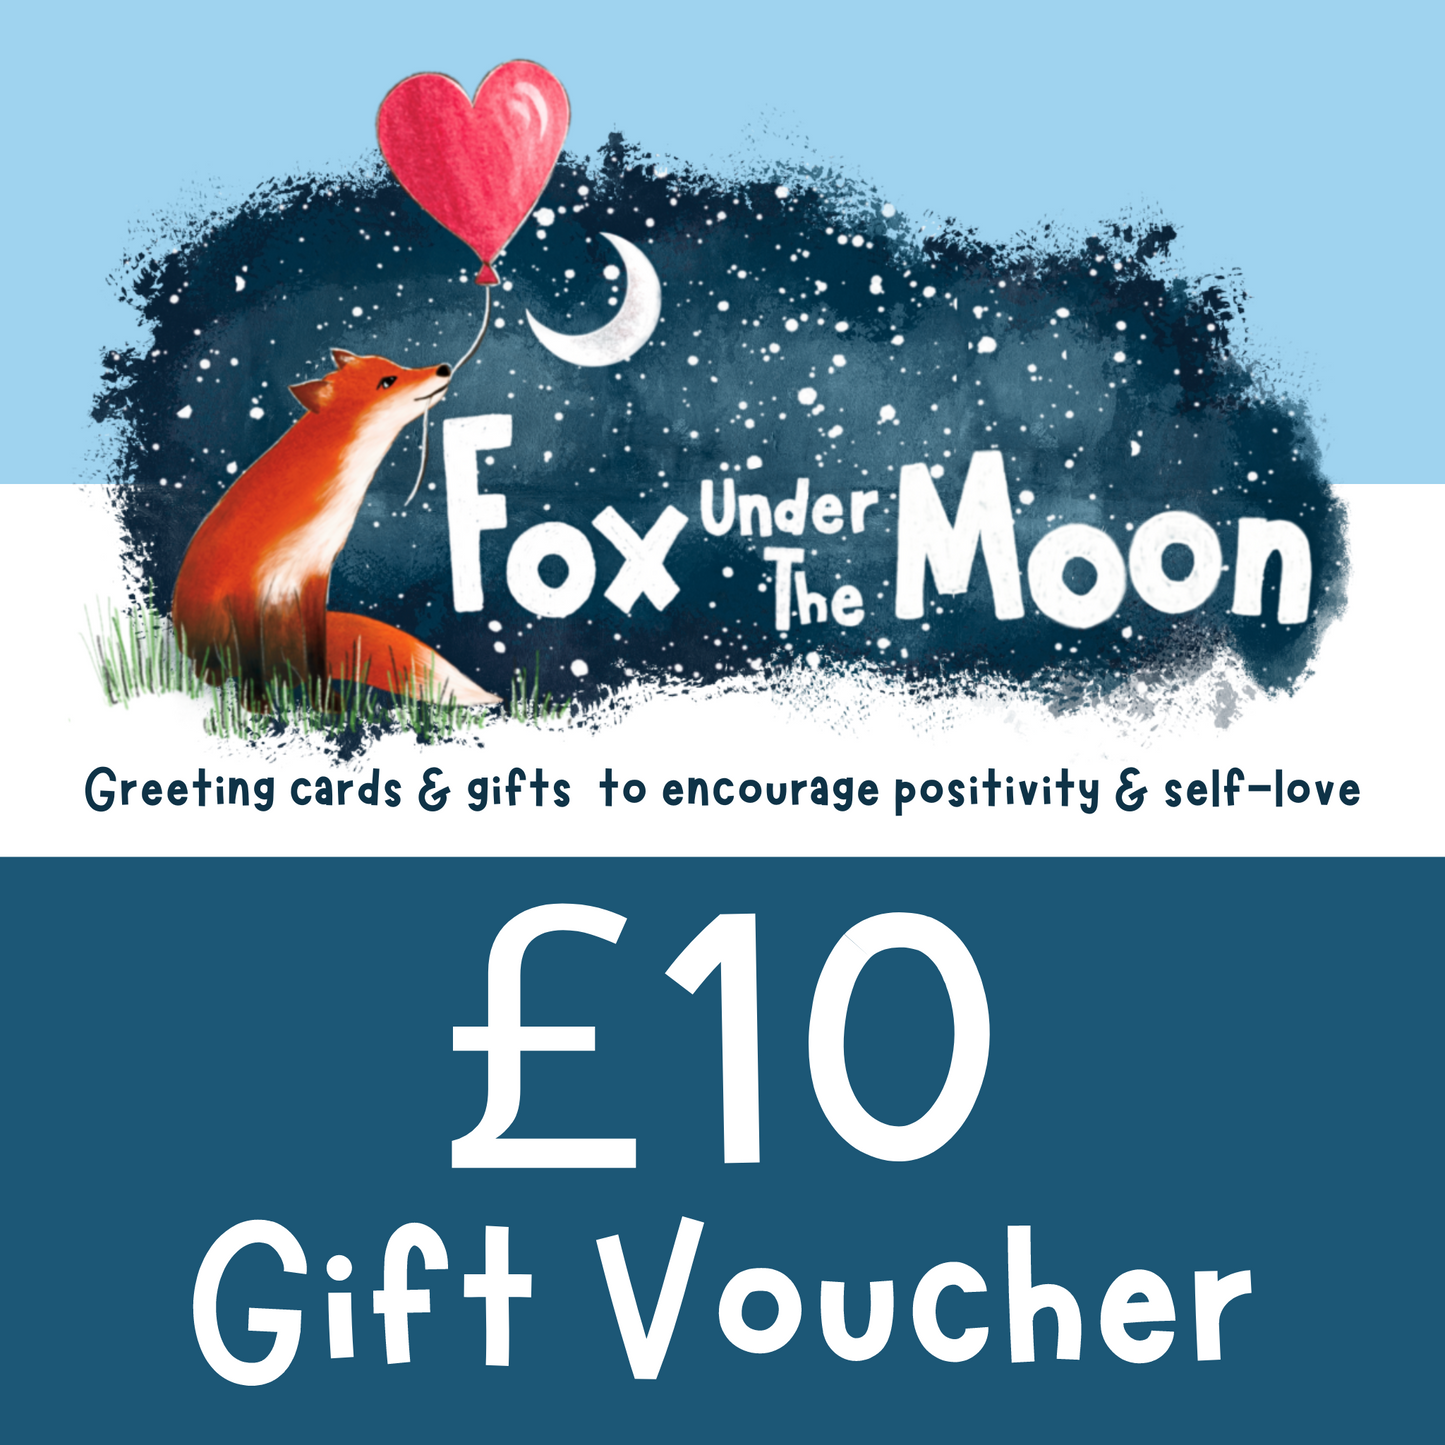 Fox Under The Moon Gift Voucher